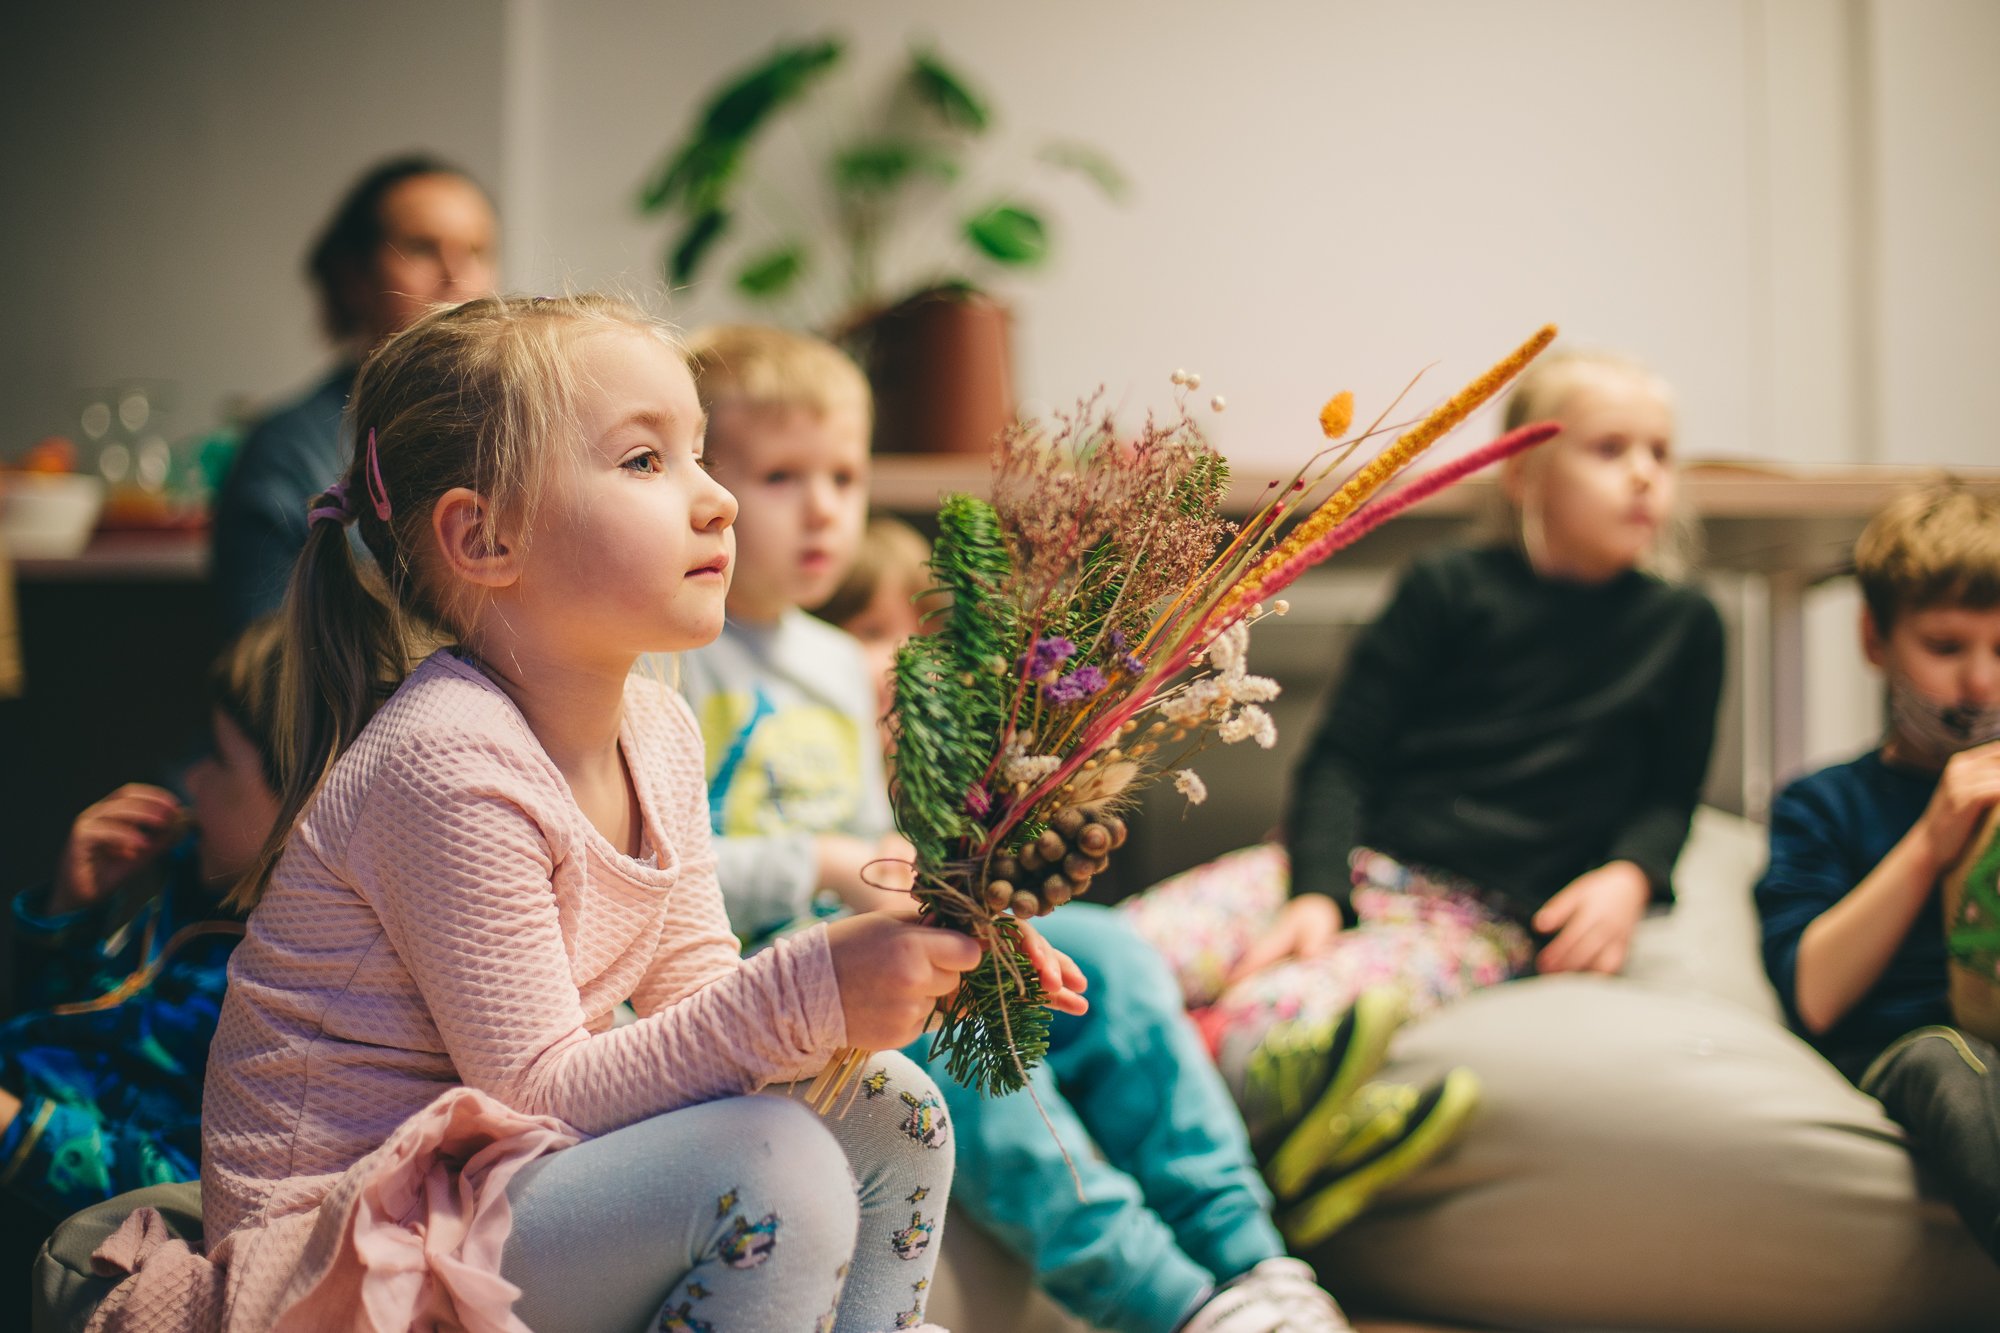 Na podłodze w pomieszczeniu siedzą dzieciaki w róznym wieku, z zainteresowaniem słuchają koncertu kolęd. Ostrość zdjęcia skupiona jest na dziewczynce siedzącej po lewej stronie. W dłoniach trzyma bukiet z zasuszonych kwiatów.